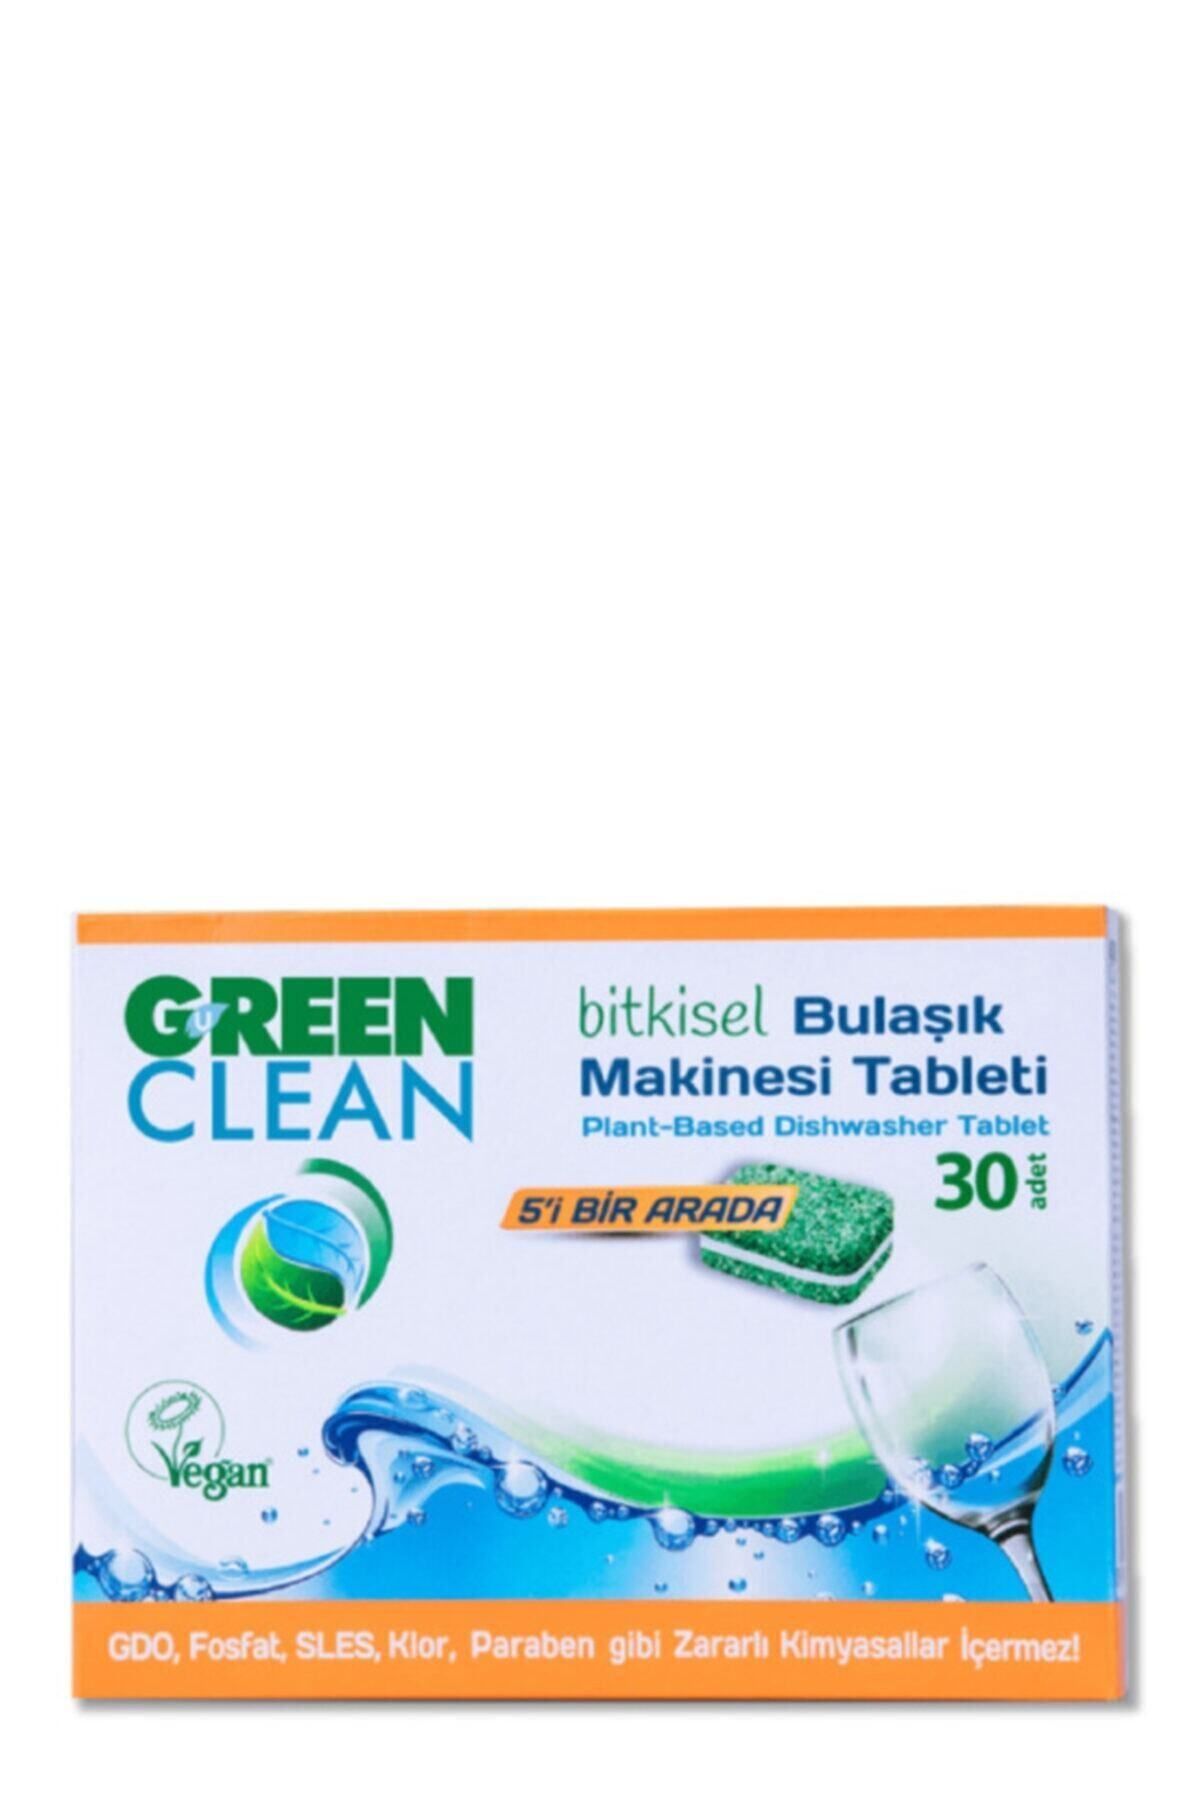 Green Clean Bitkisel 30'lu Bulaşık Makinesi Tableti